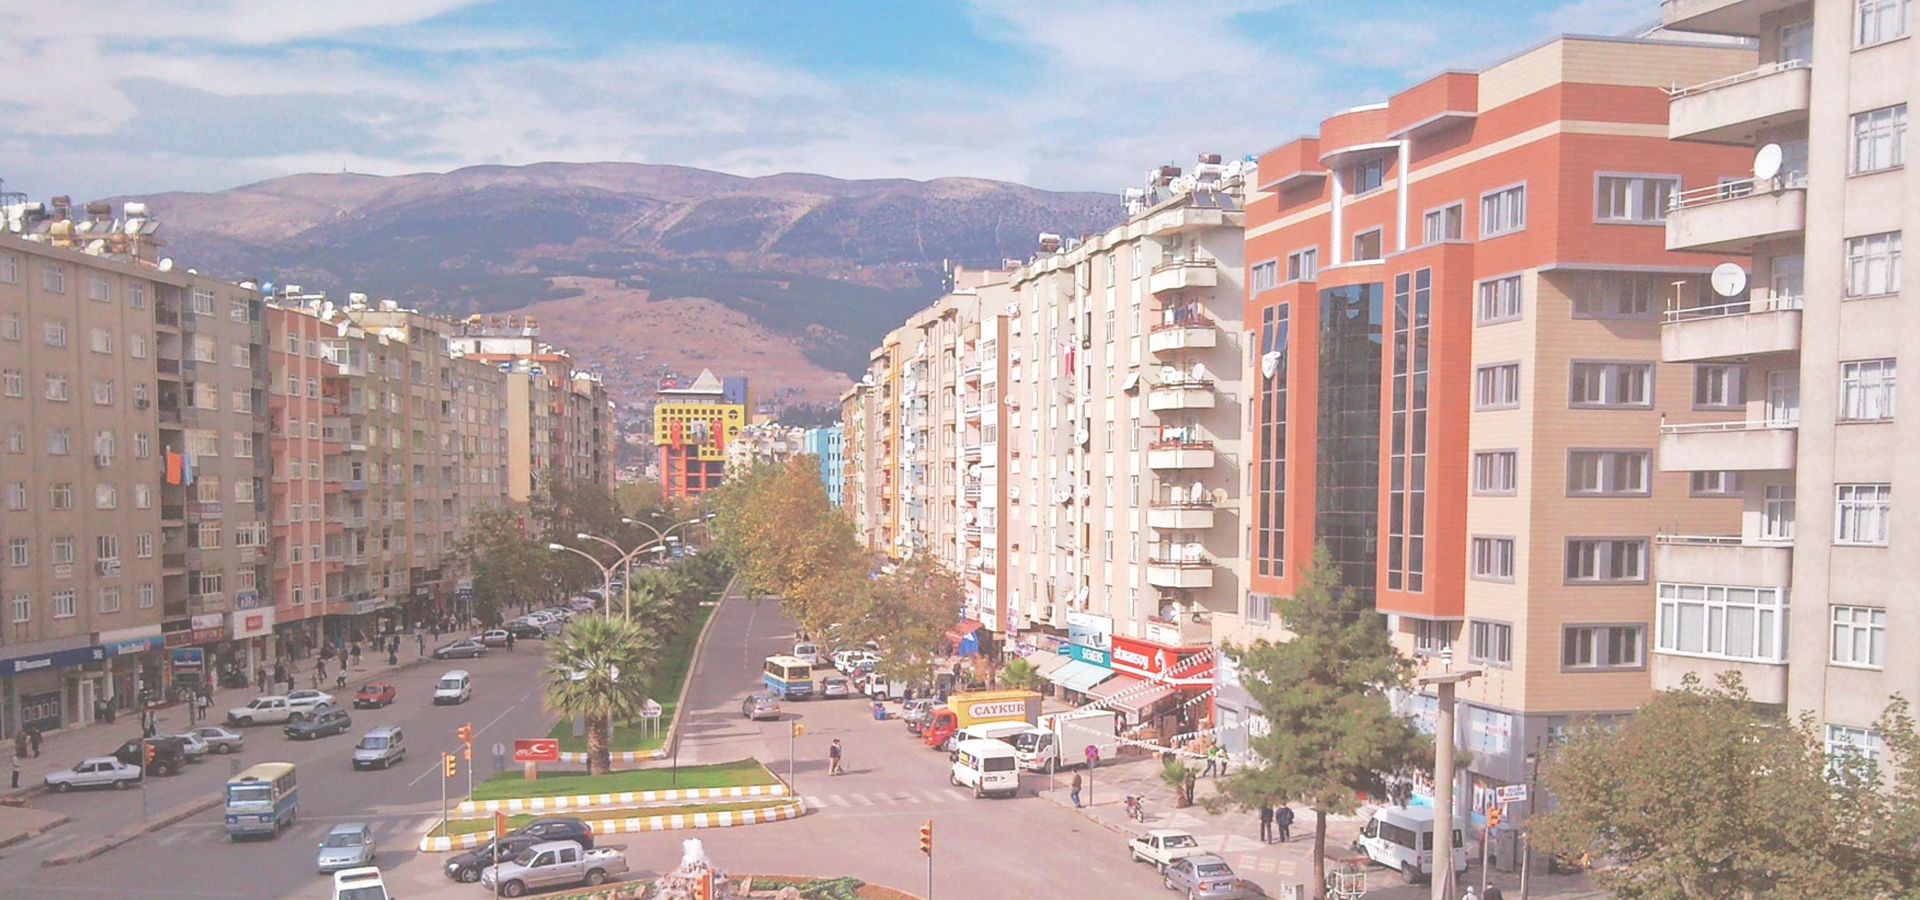 Trabzon Avenue, Kahramanmaras, Turkey